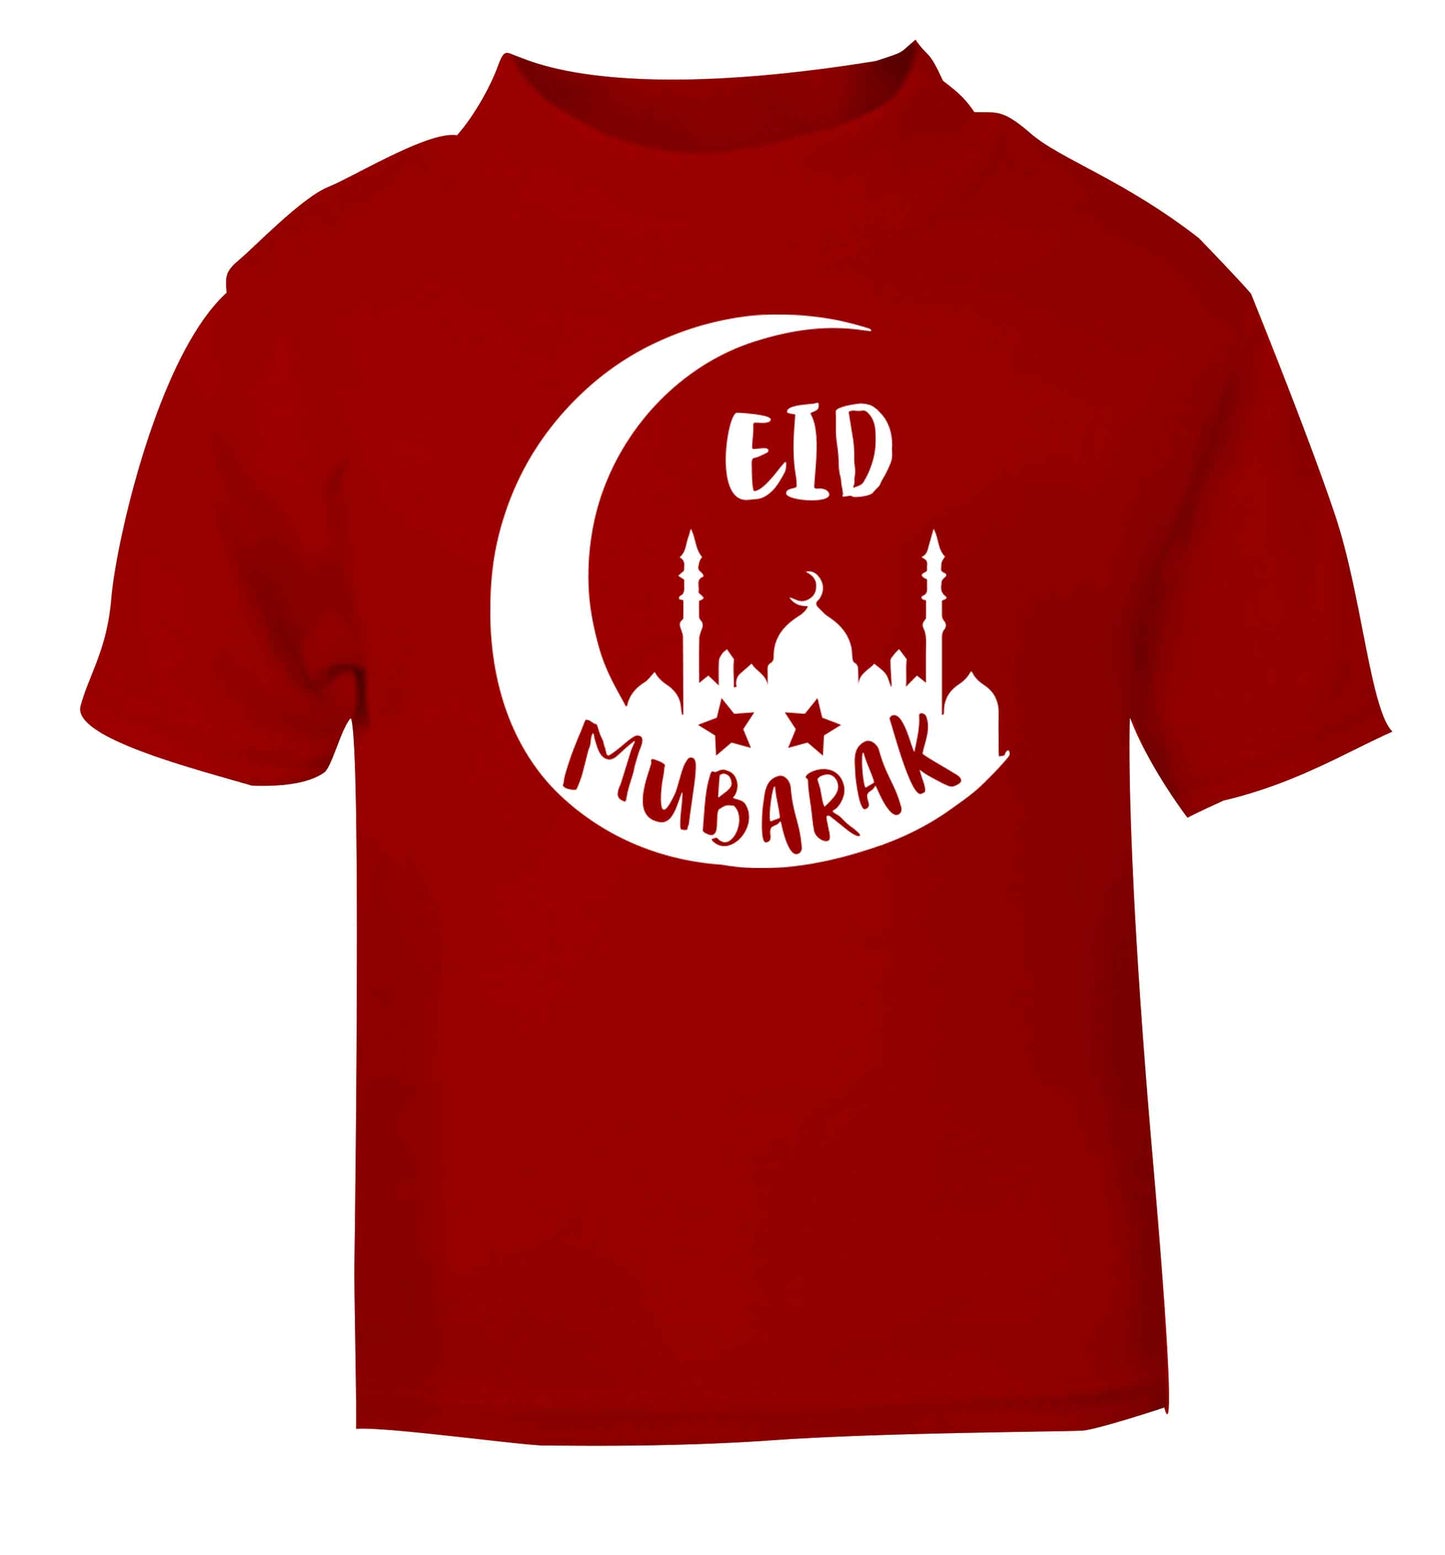 Eid mubarak red baby toddler Tshirt 2 Years